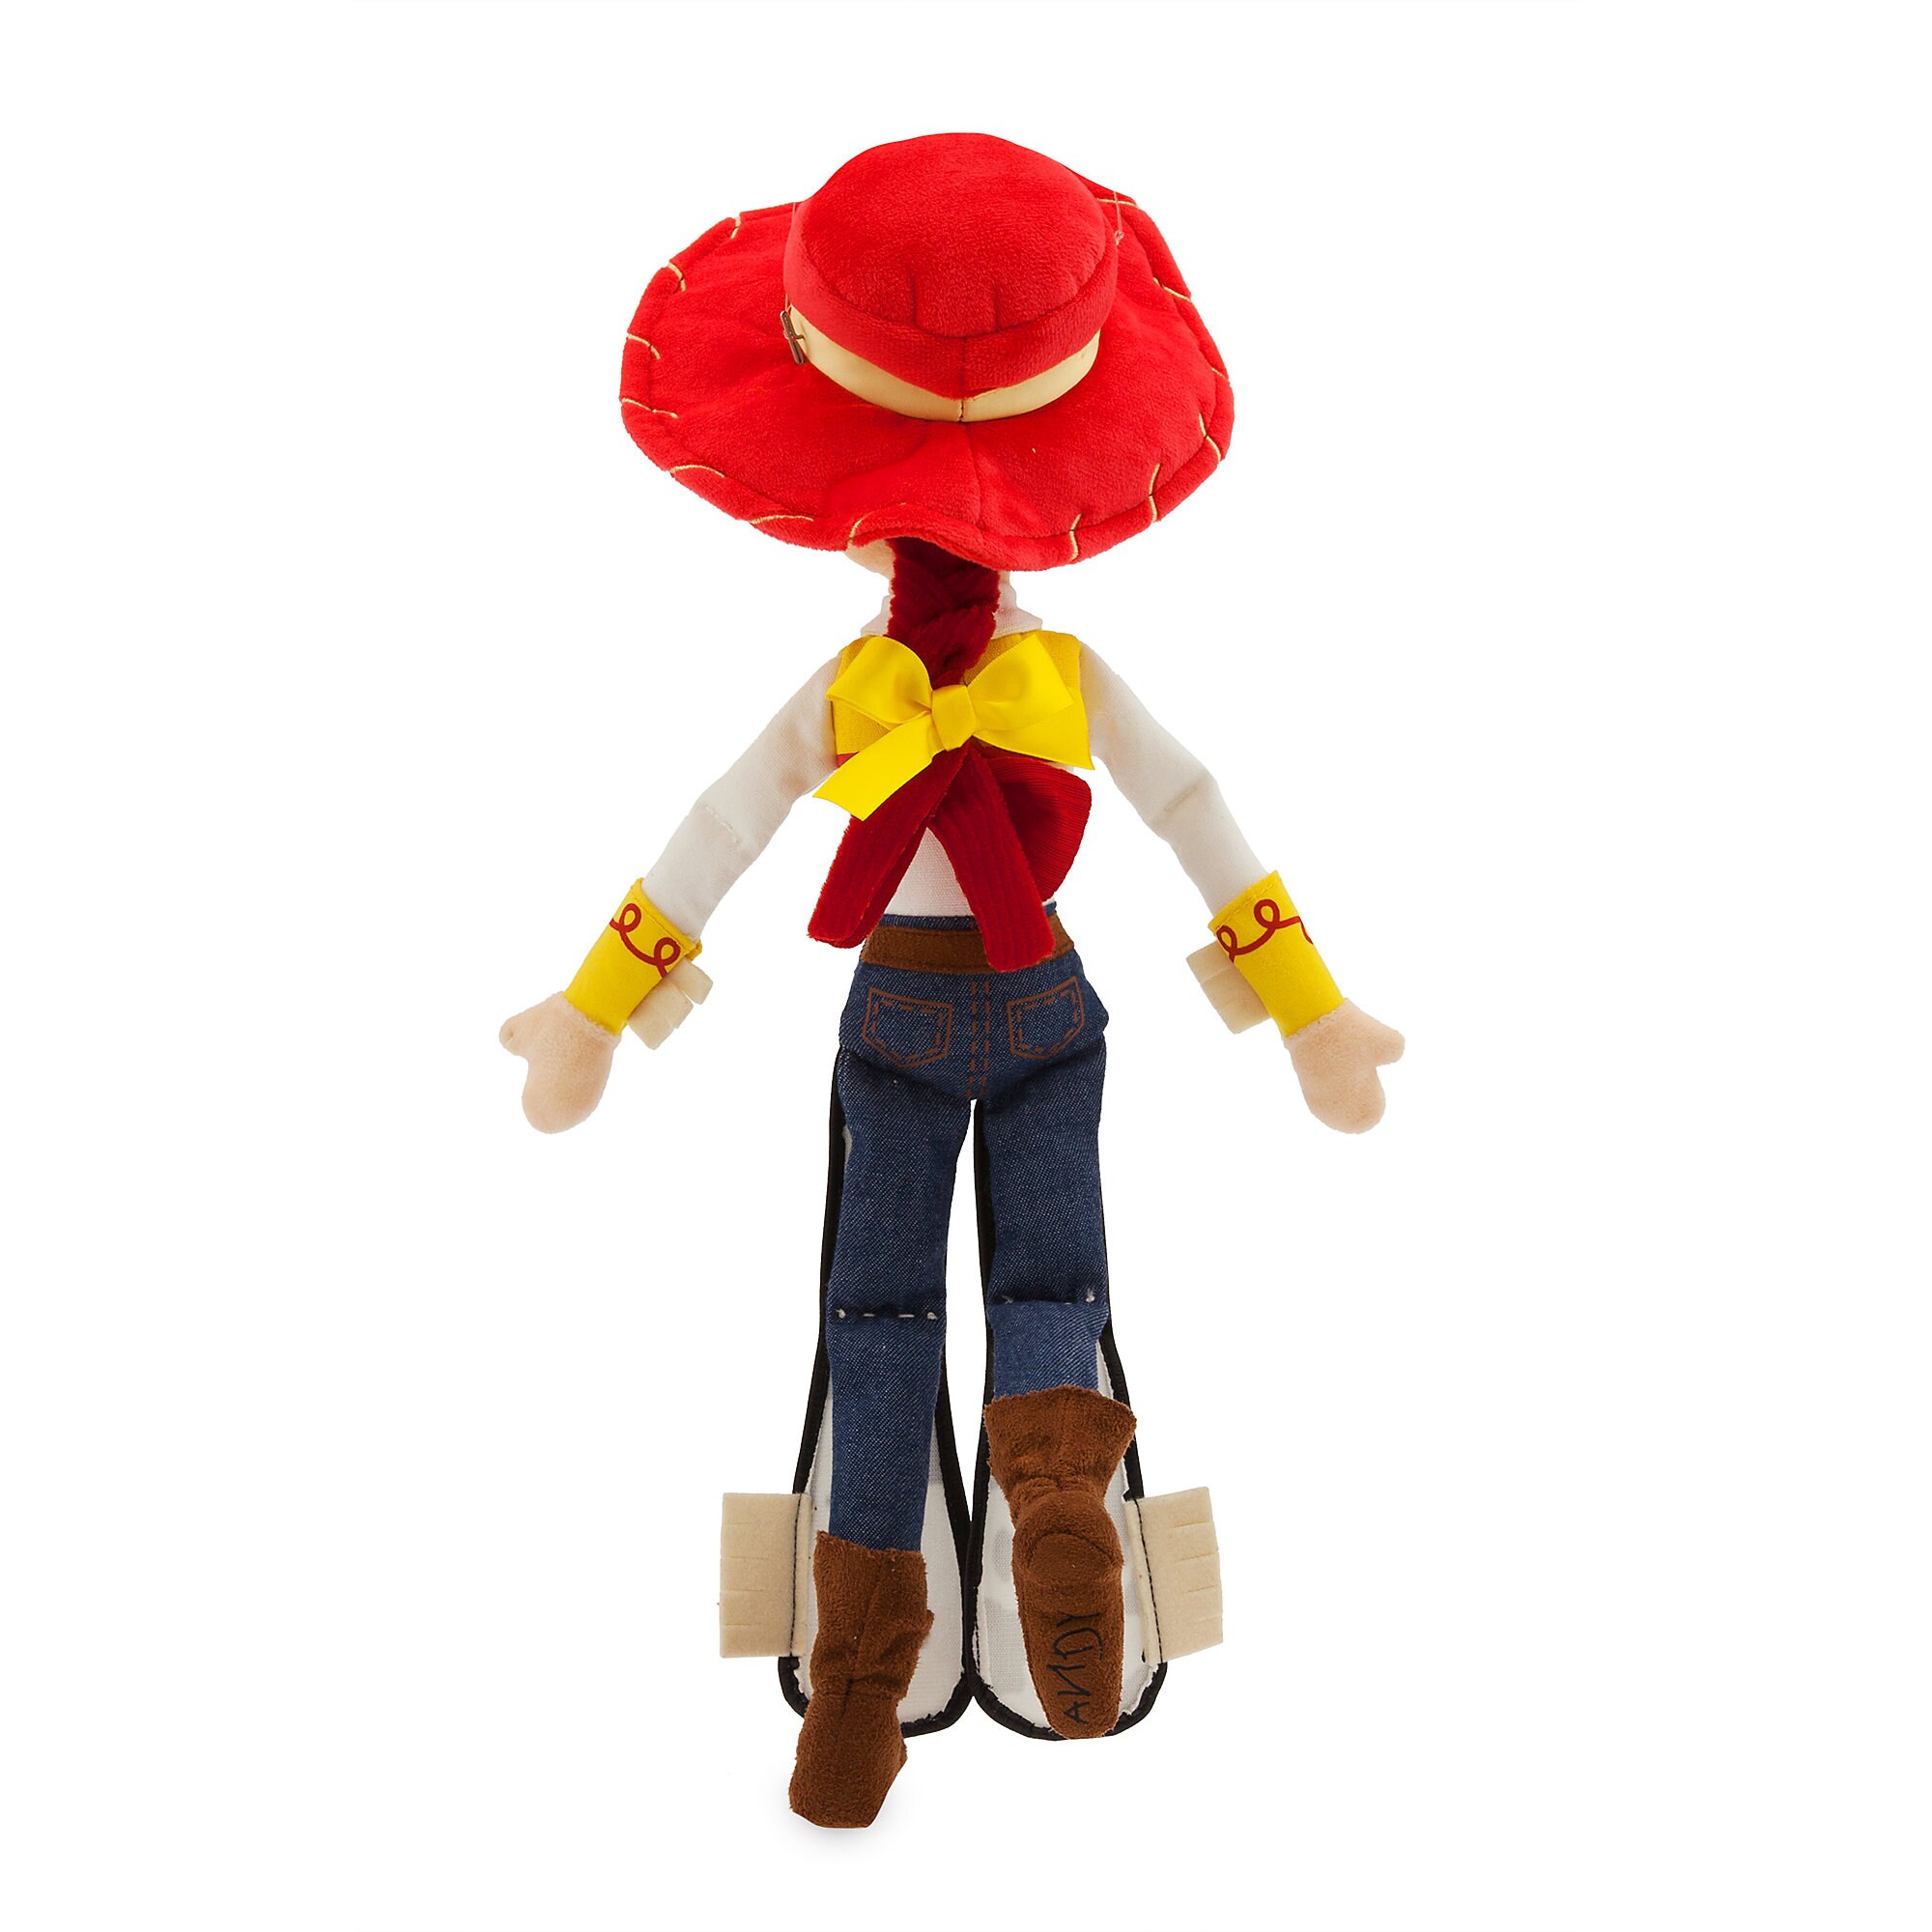 Jessie Plush - Toy Story 4 - Medium - 16 1/2''